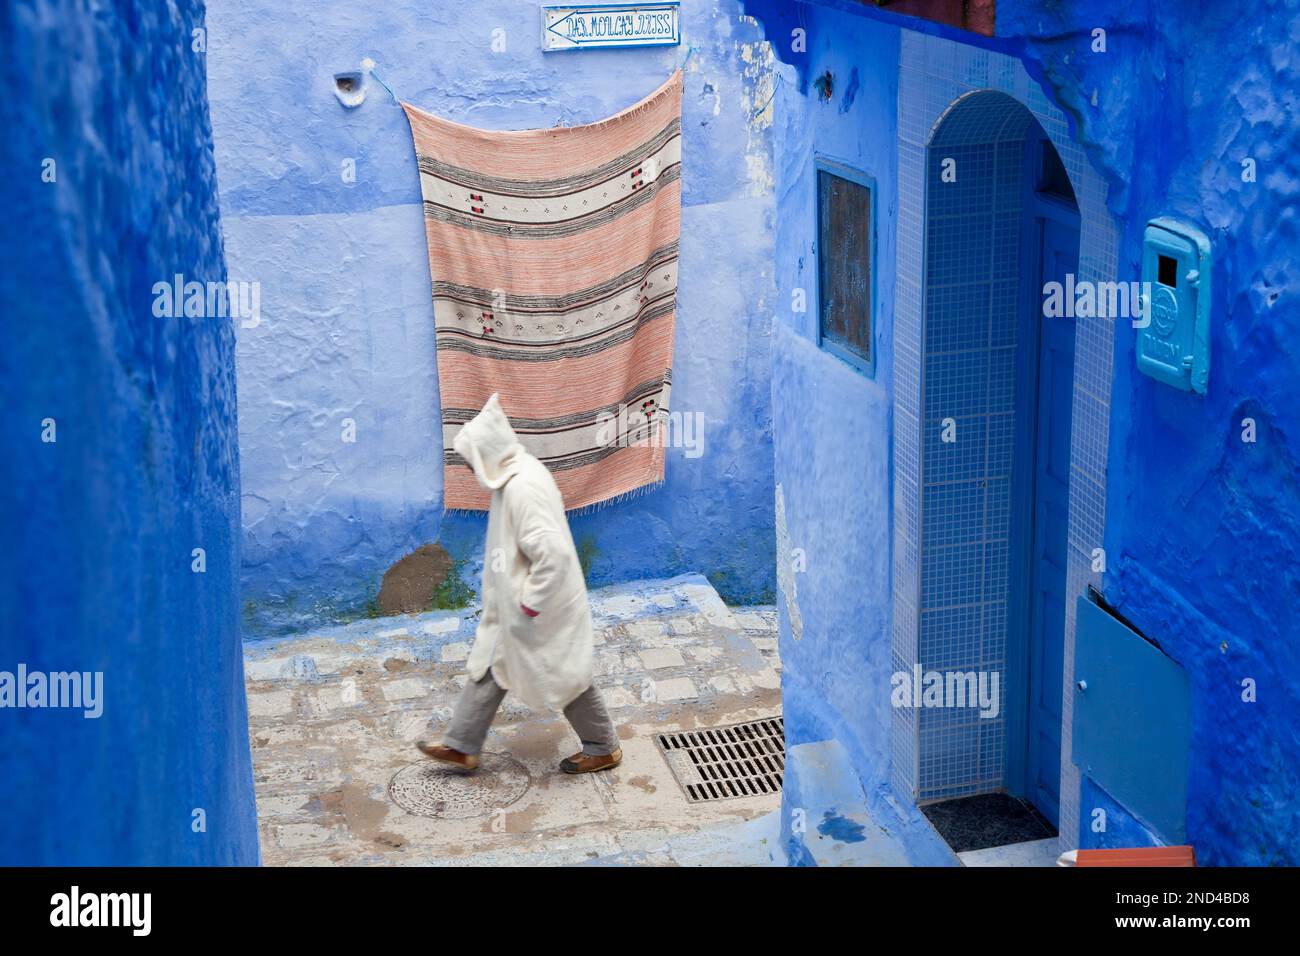 Homme marchant sur la rue portant une djellaba, Chefchaouen, Maroc Banque D'Images